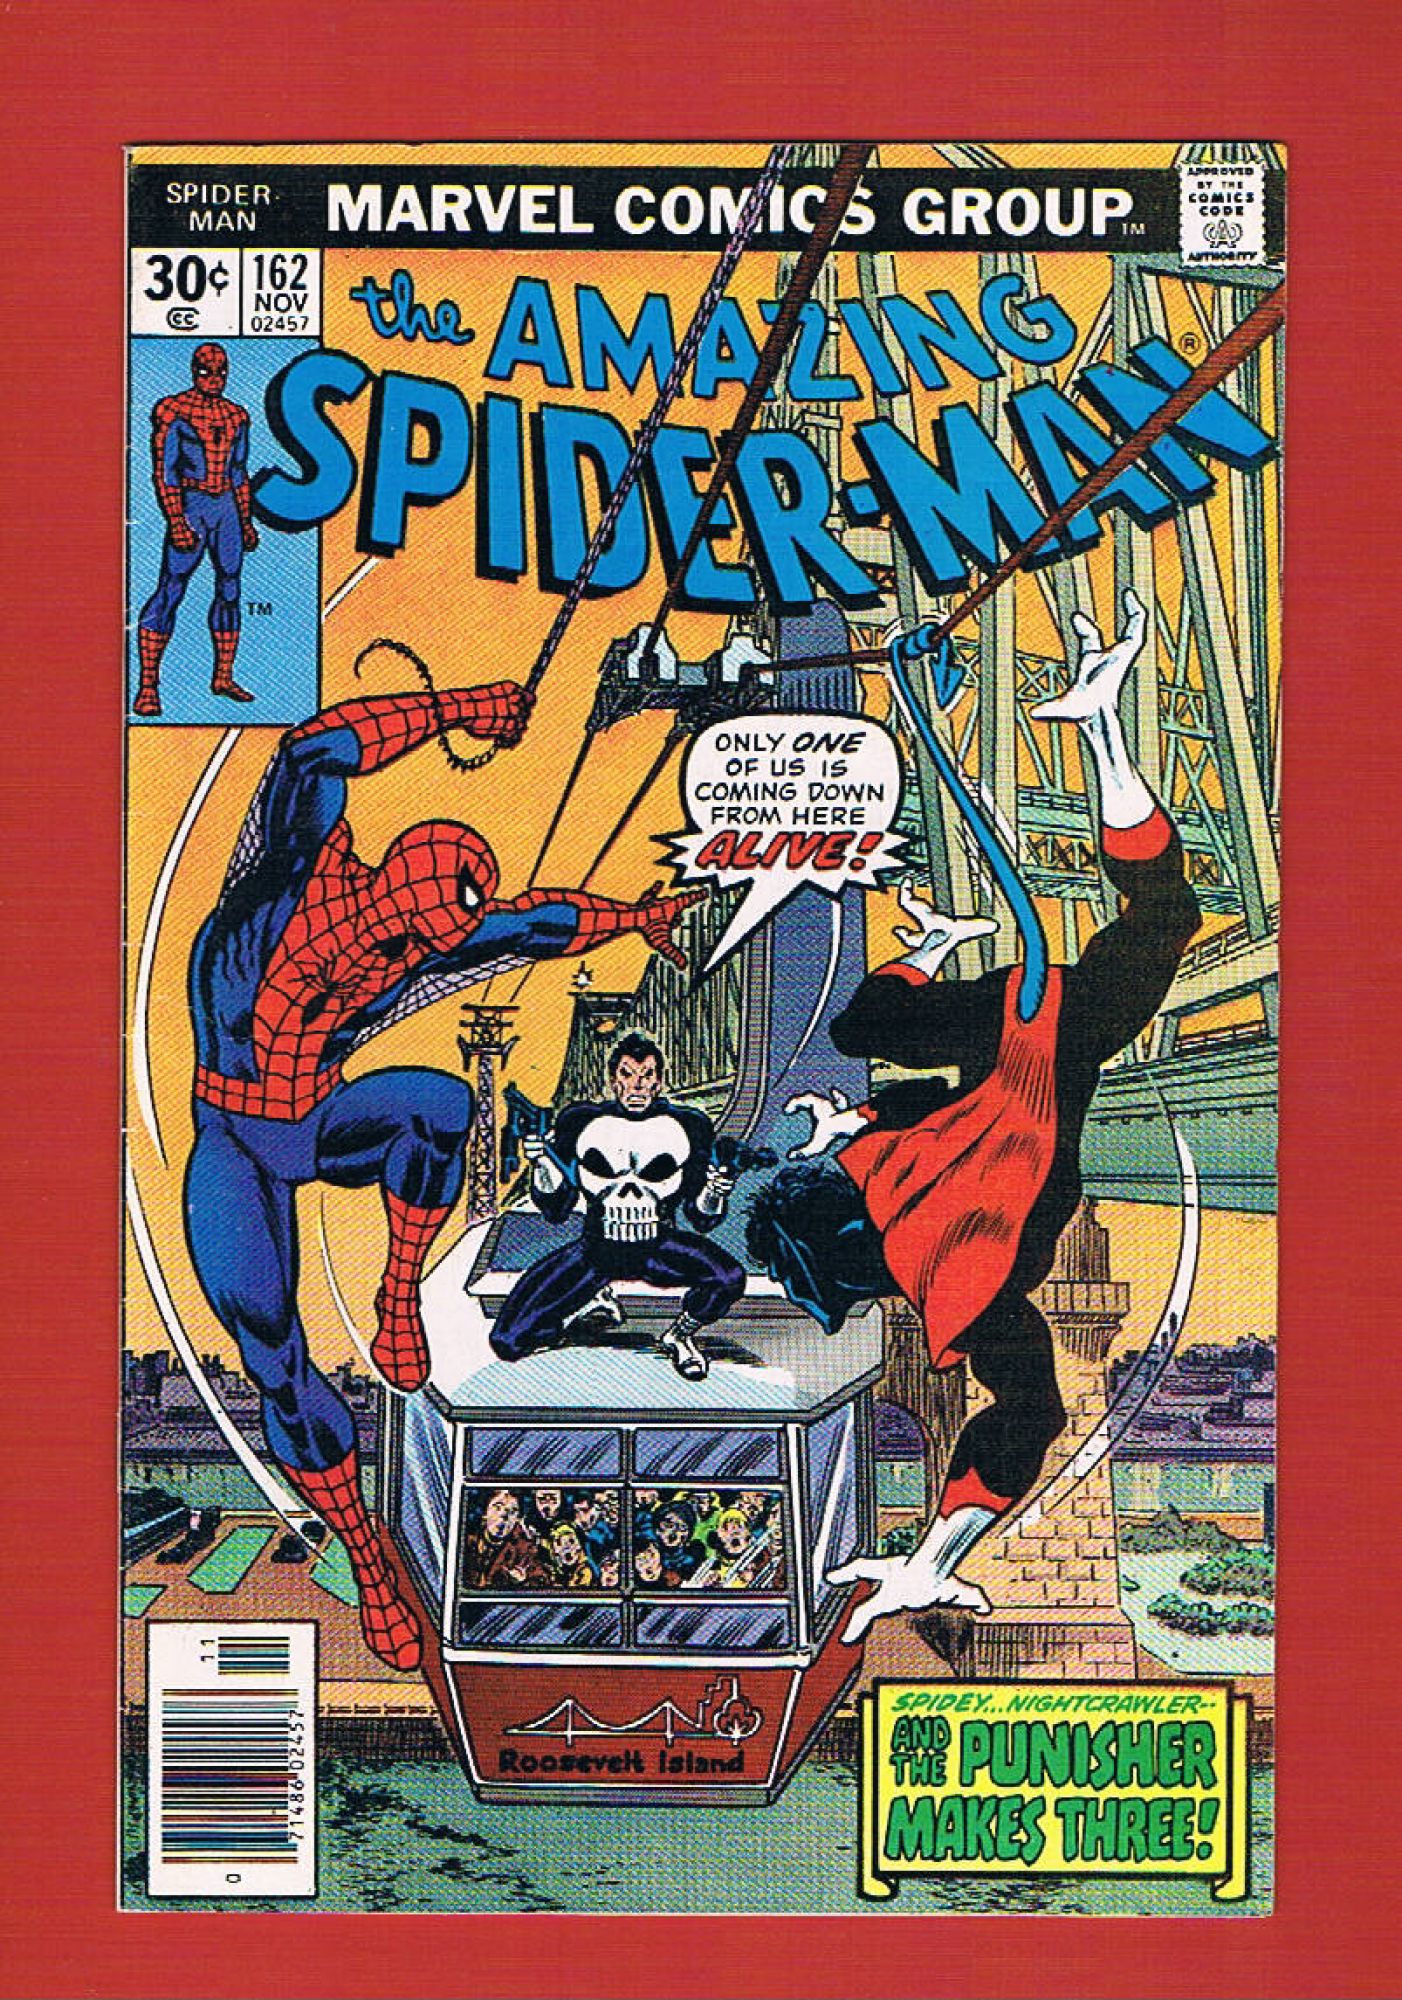 Amazing Spider-Man #162, Nov 1976, 5.0 VG/FN